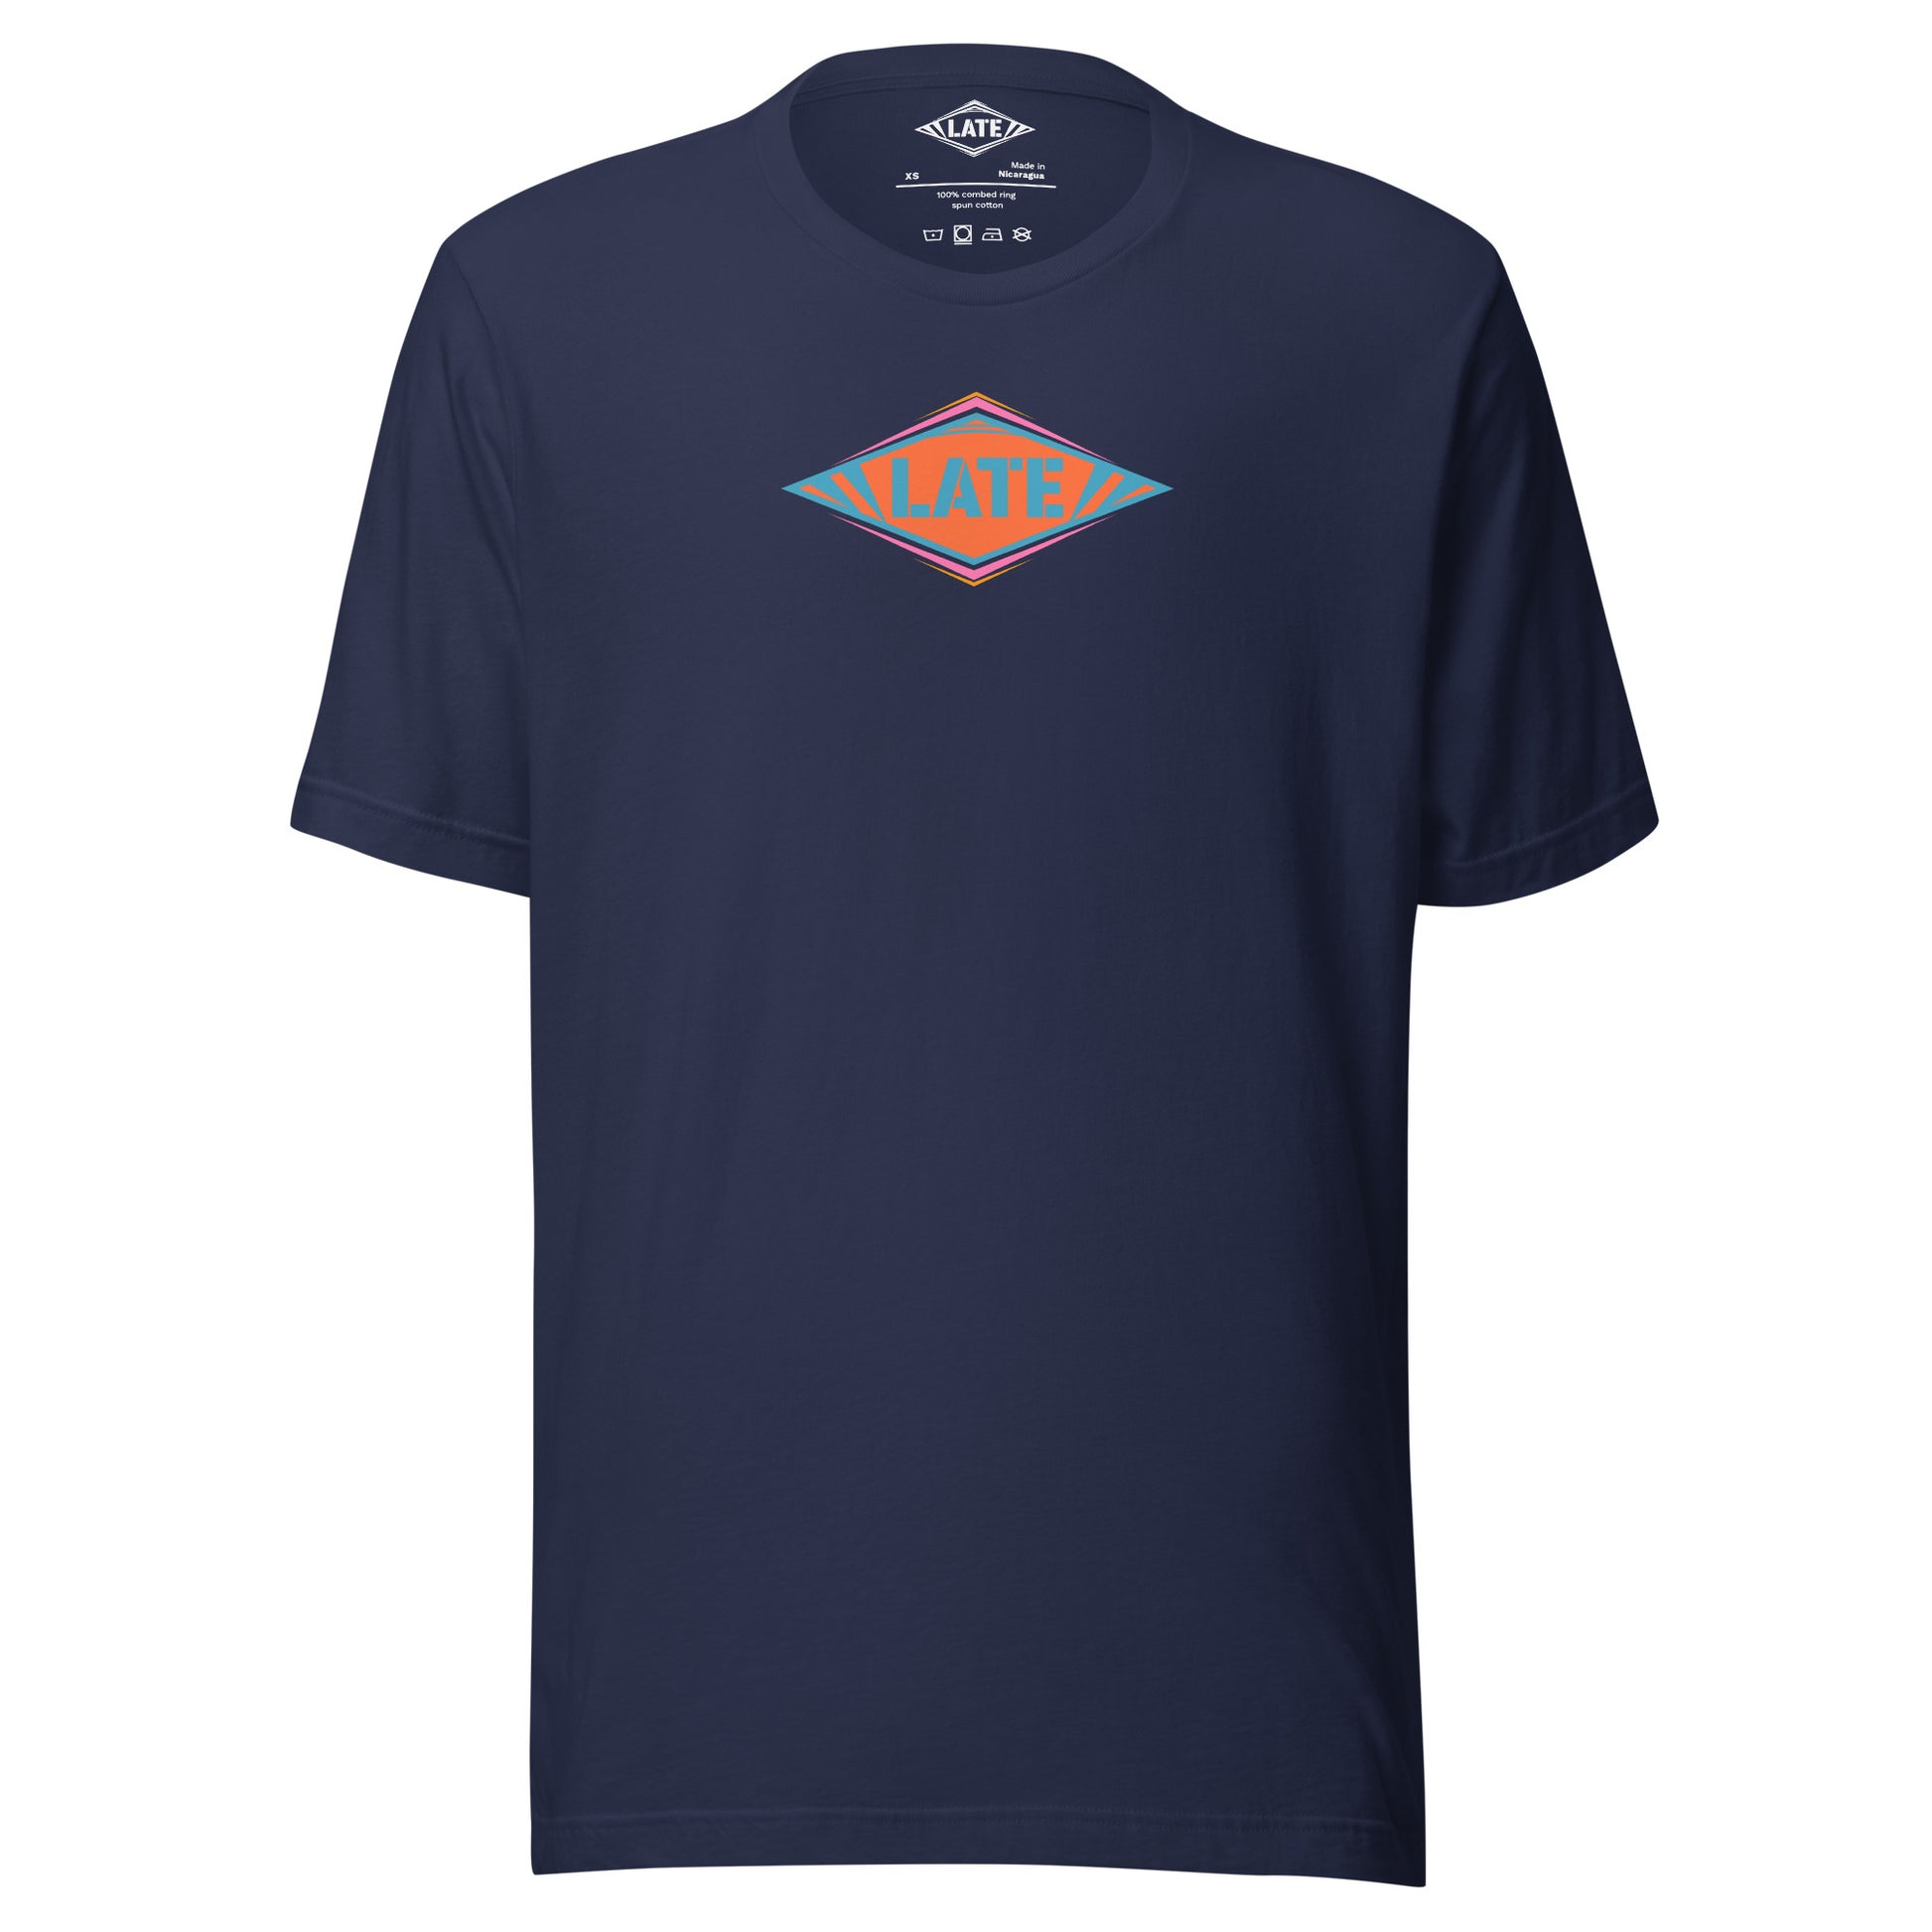 T-Shirt skateboard logo Late coloré bleu orange et violet, t-shirt unisex couleur navy